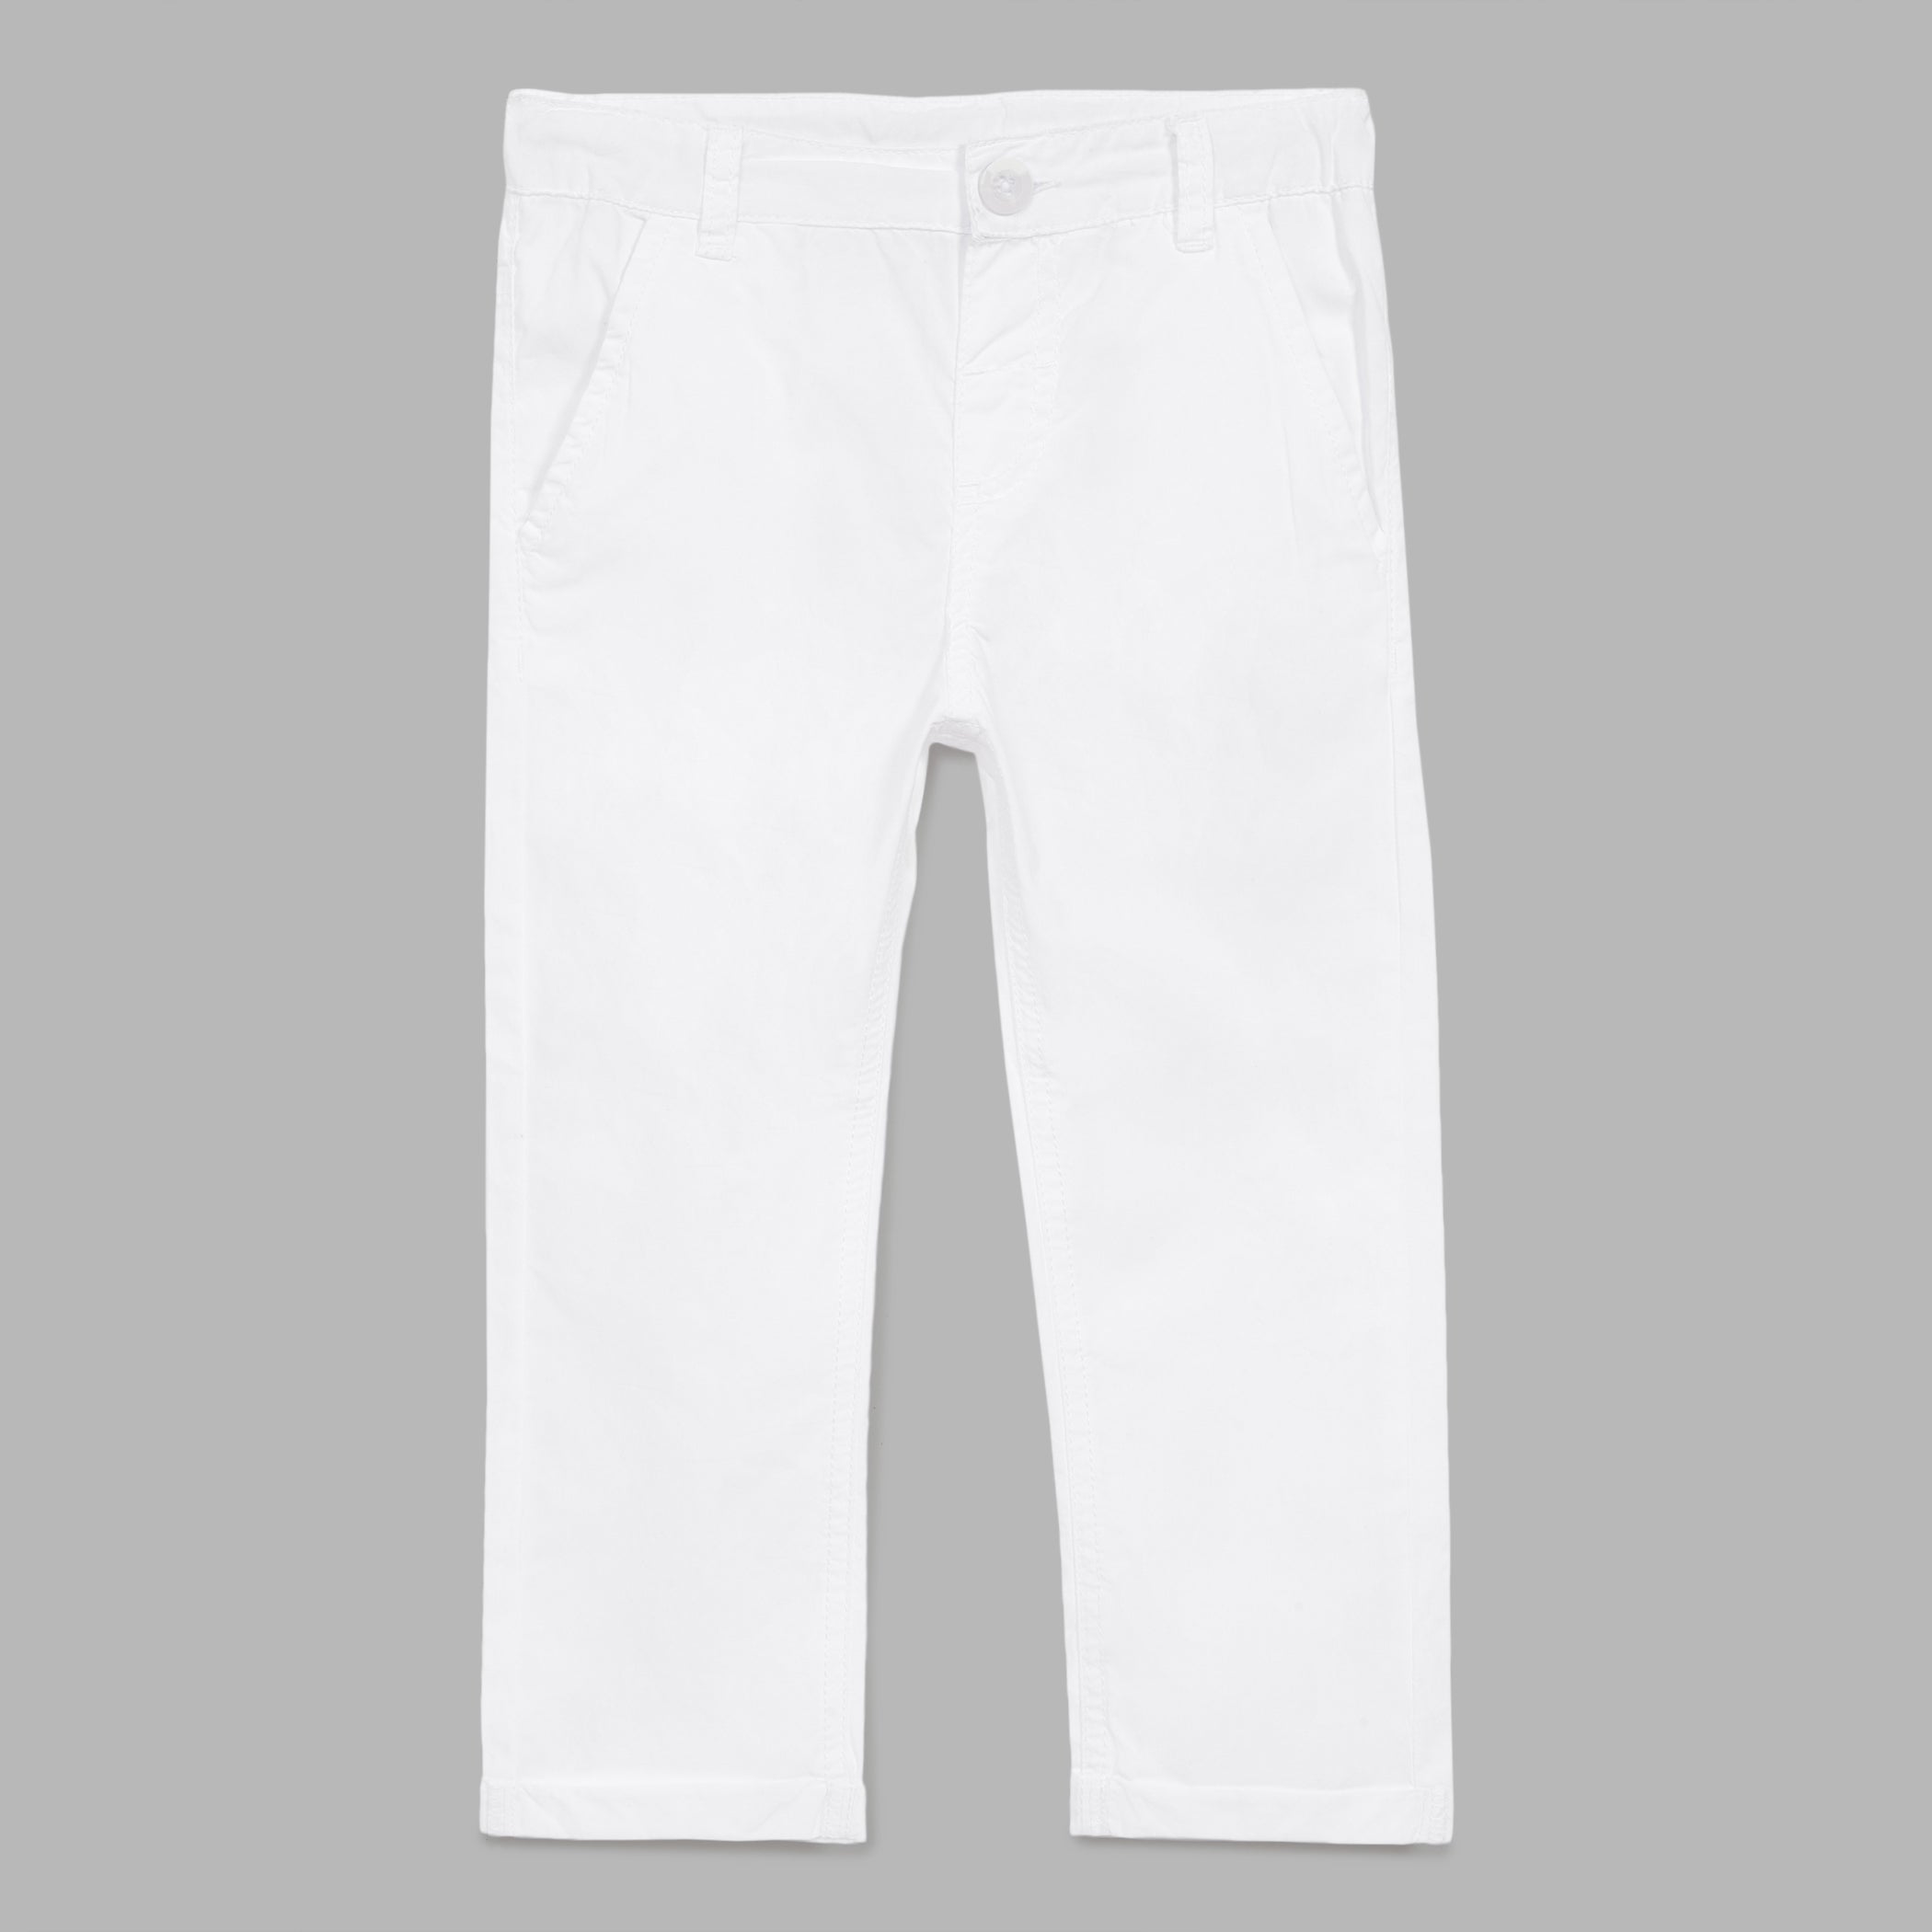 Cotton White Plain School Trousers Waist Size 2634